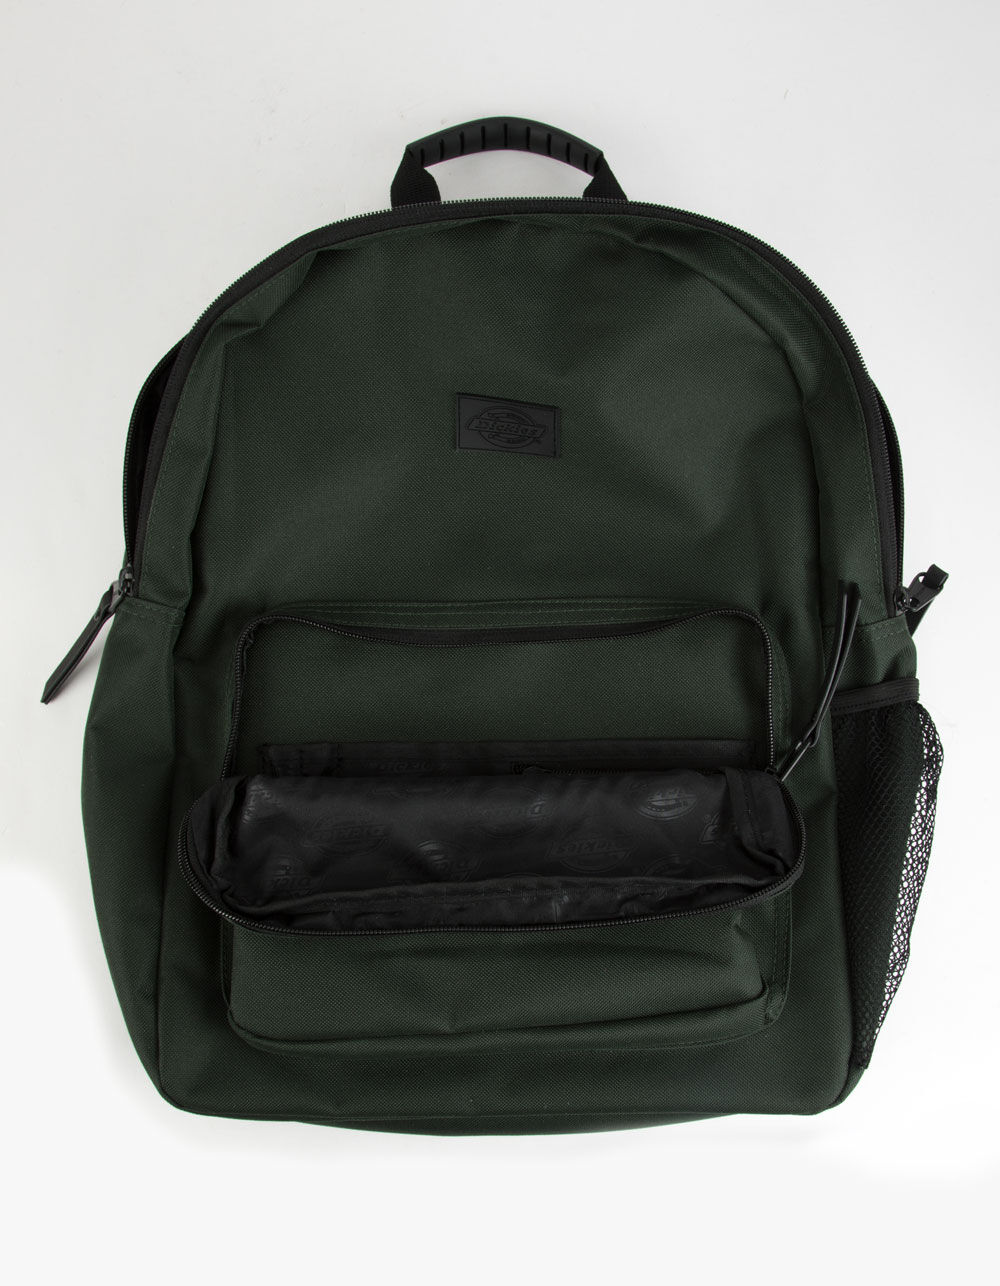 DICKIES Cadet Solid Olive Backpack - OLIVE | Tillys